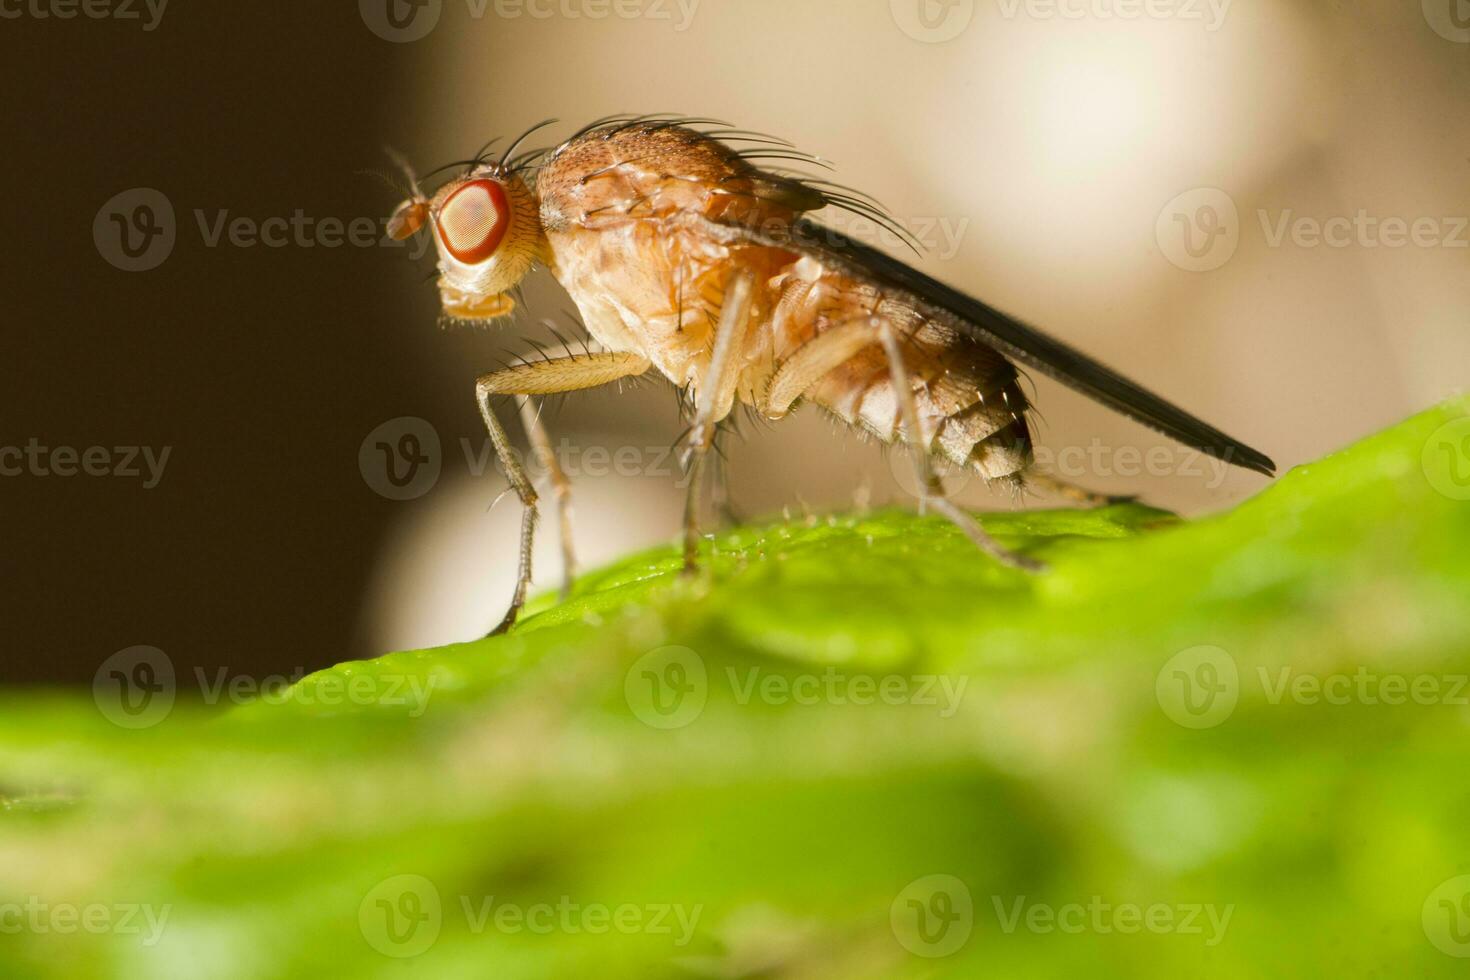 fruit fly close up photo